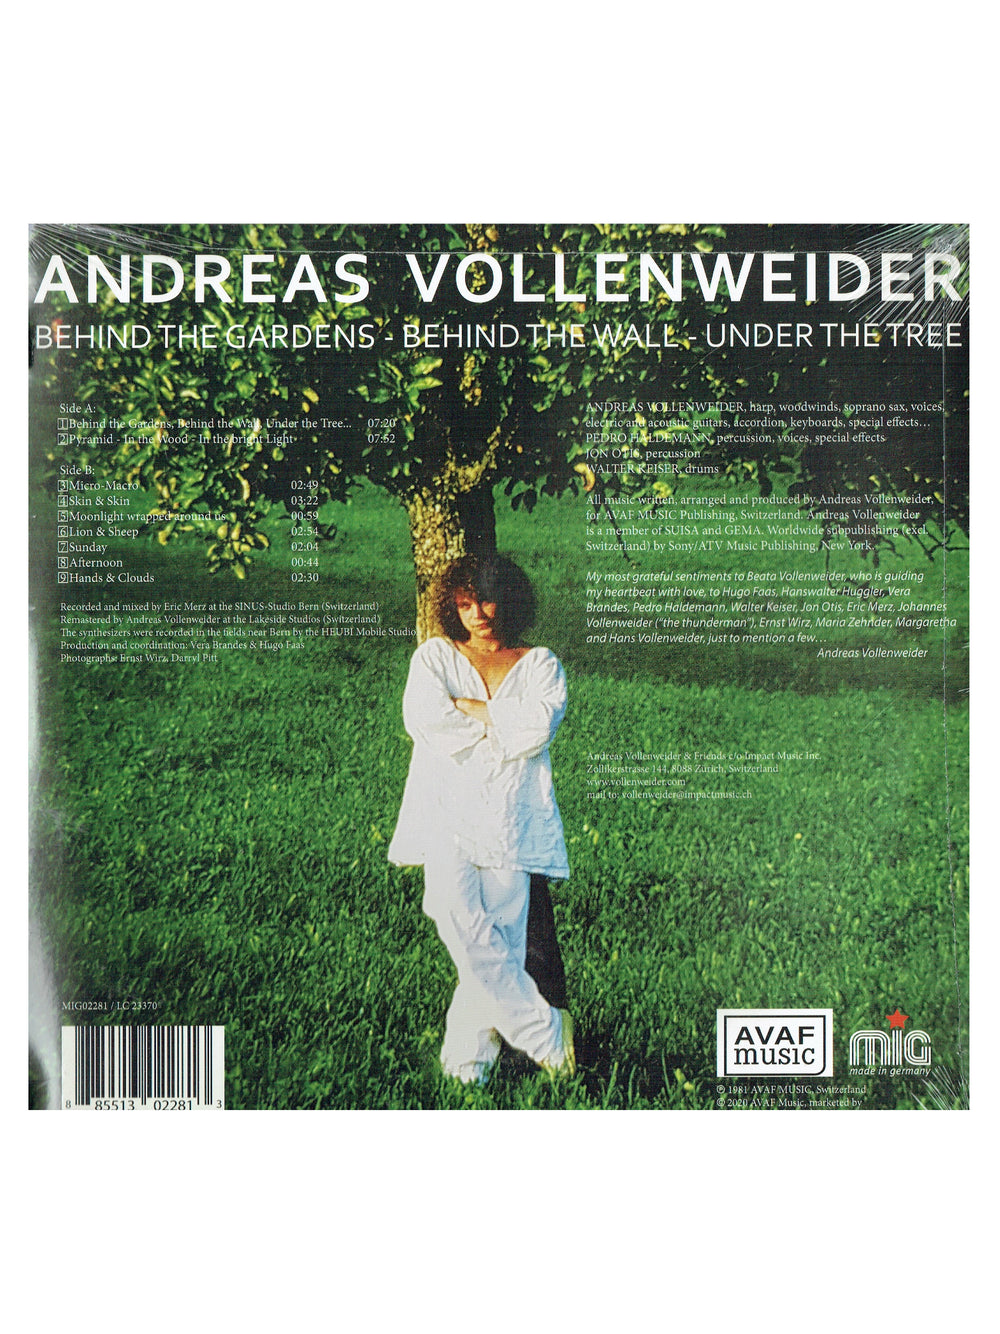 Prince – Andreas Vollenweider – Behind The Gardens - Vinyl LP Album Reissue Europe NEW: 2020